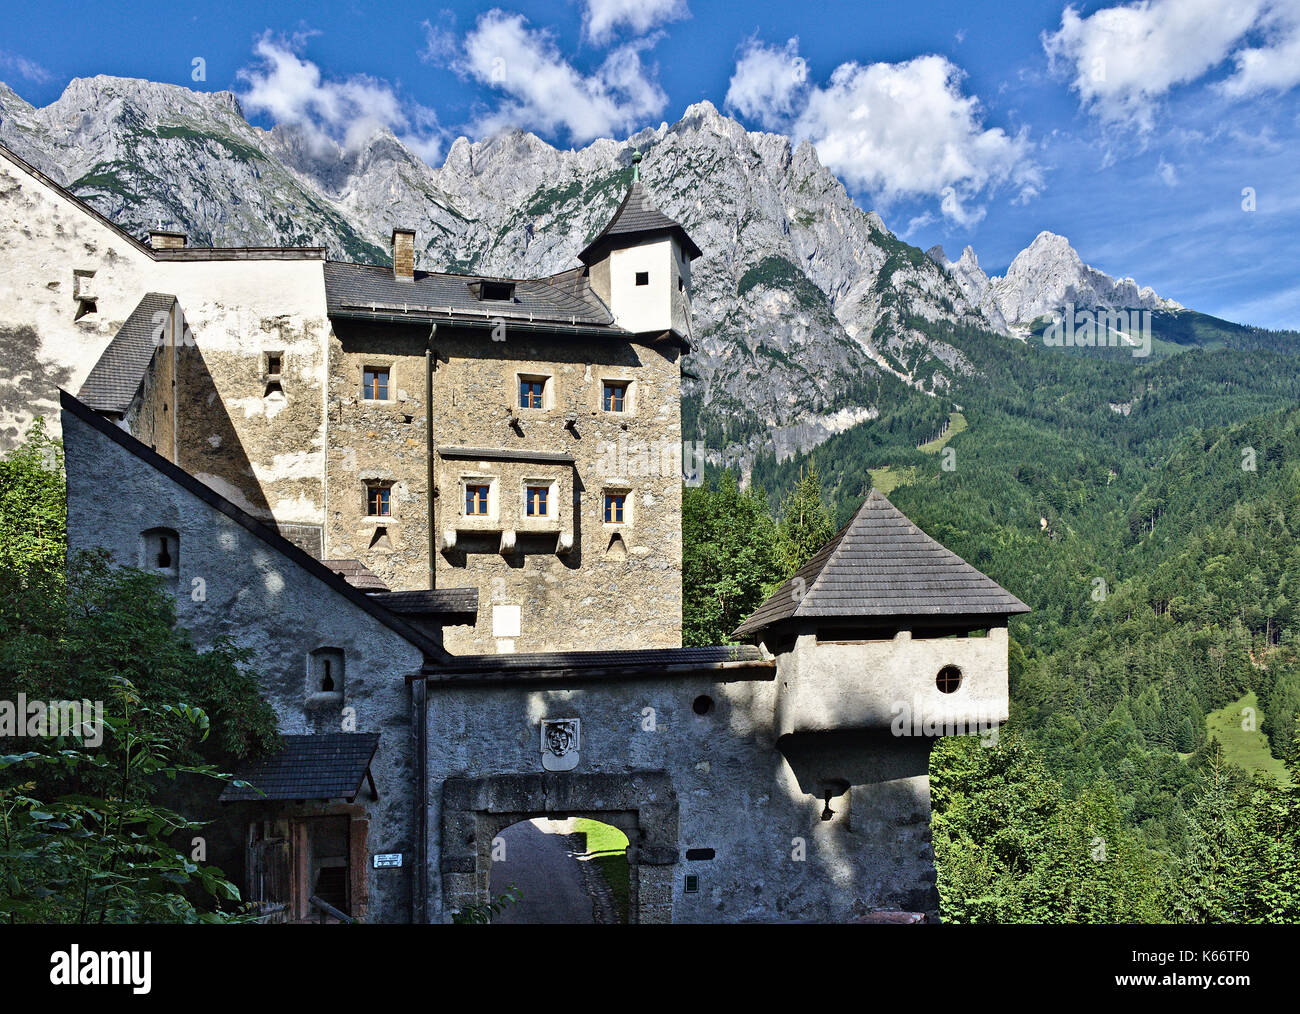 Vista esterna del castello di Hohenwerfen, Austria con la parete, torri, gatehouse e i picchi rocciosi della gamma tennen nelle alpi austriache in backgroun Foto Stock